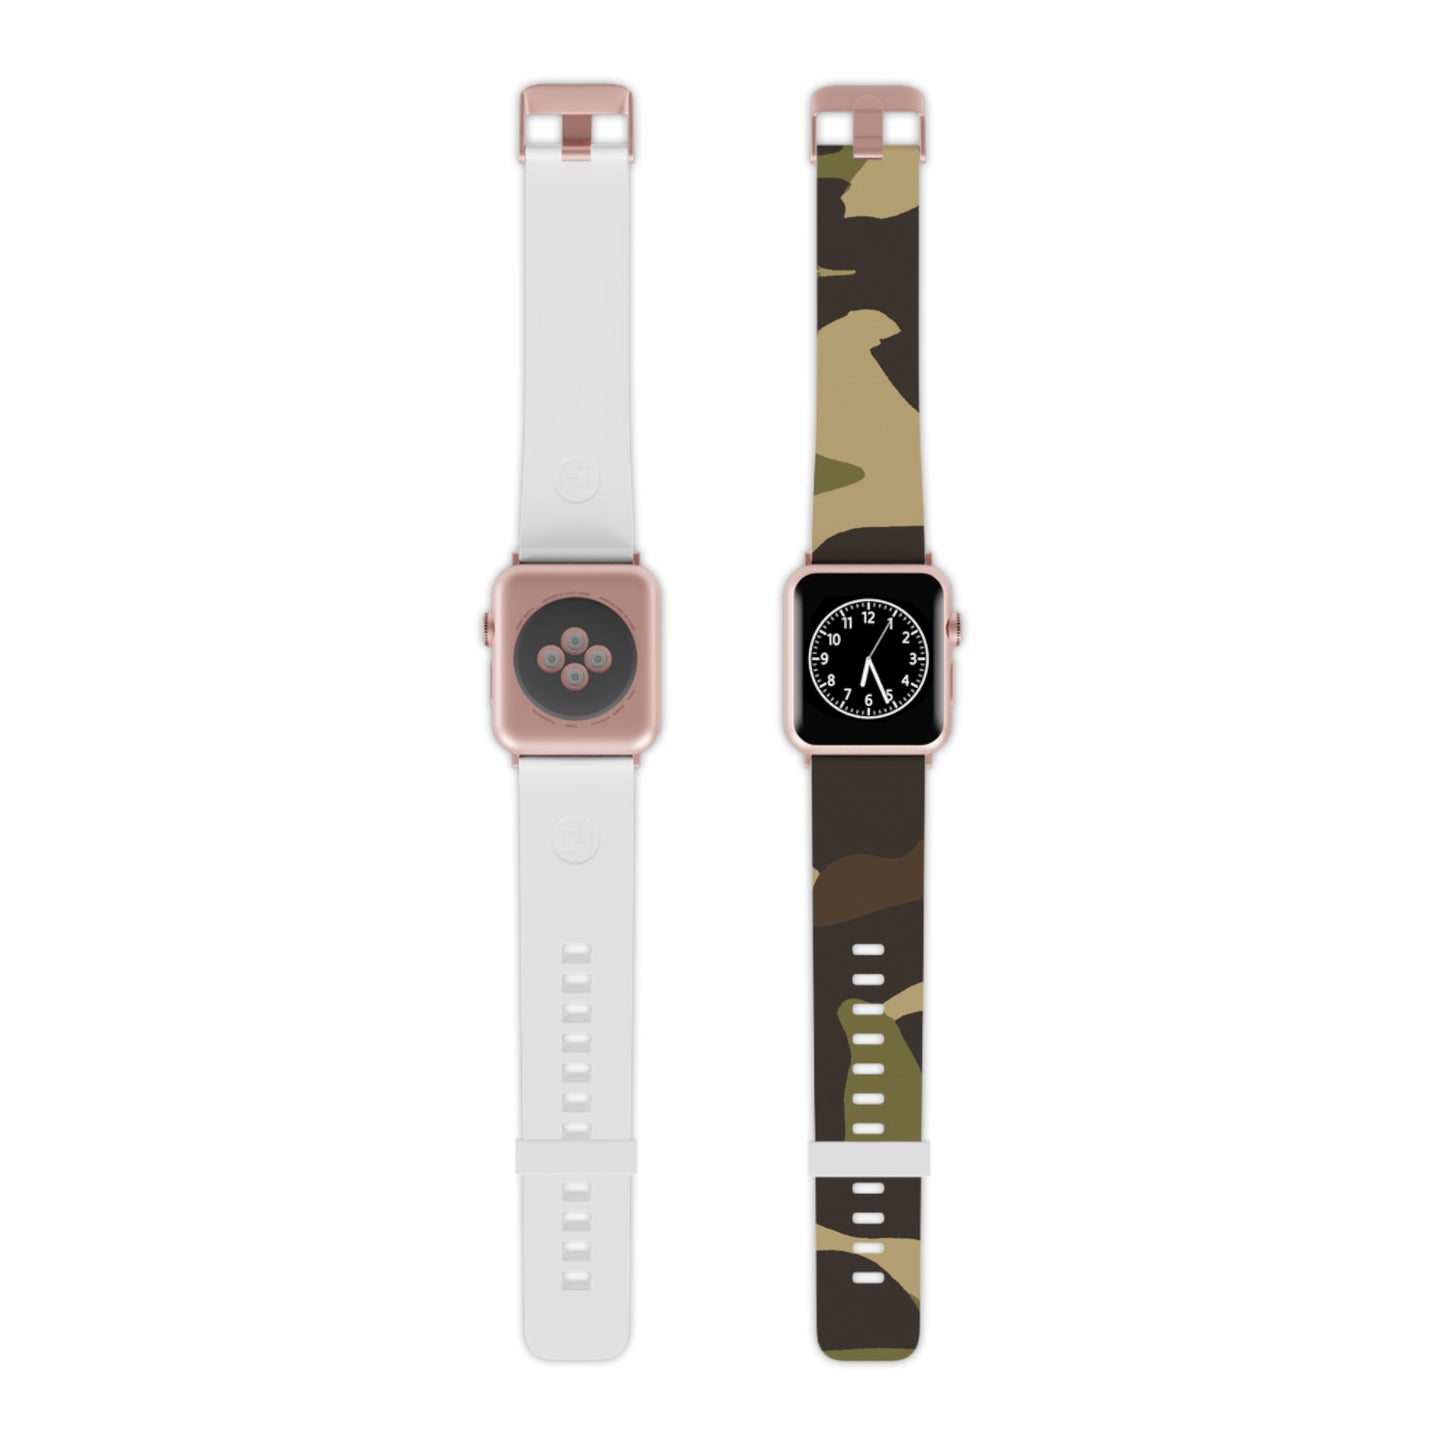 Walter Fletcher - Camouflage Apple Wrist Watch Band